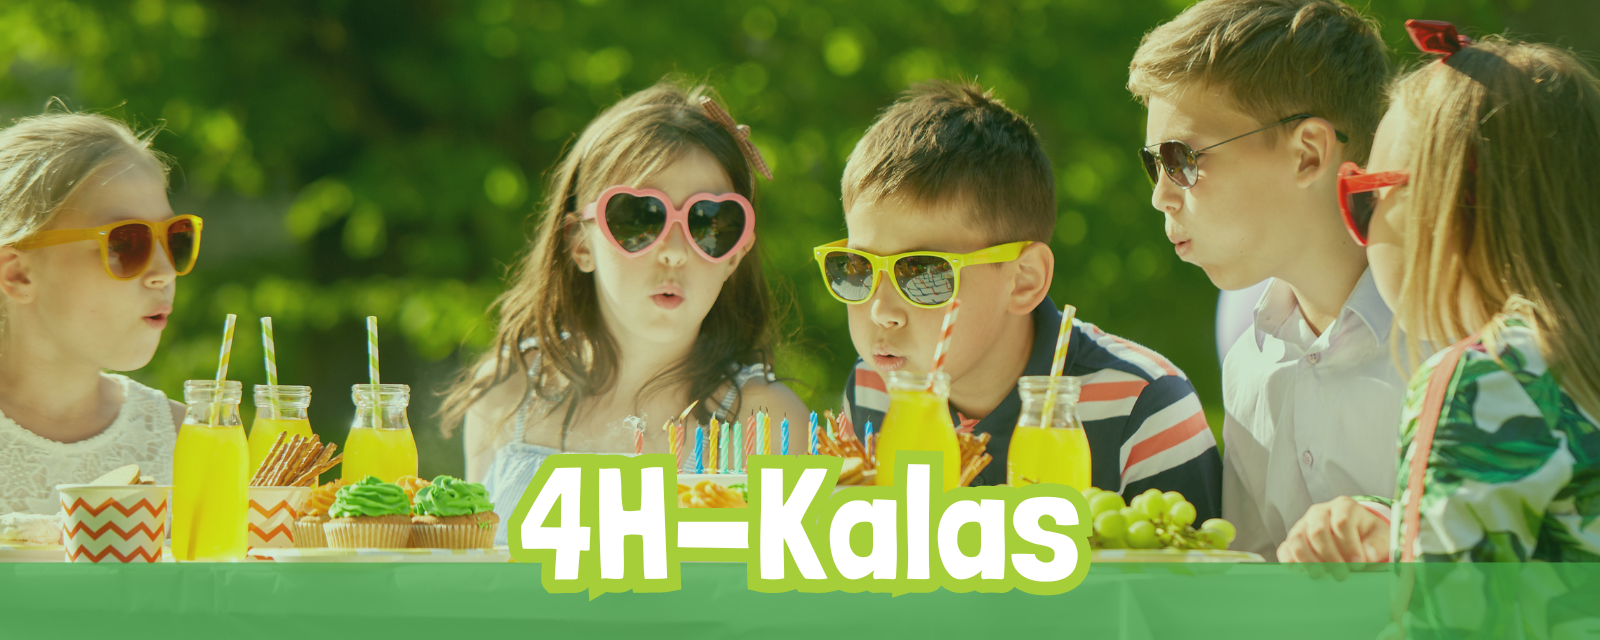 Fira 4H-kalas med barnen i föreningen och skapa tårtyra i hela Svenskfinland featured image